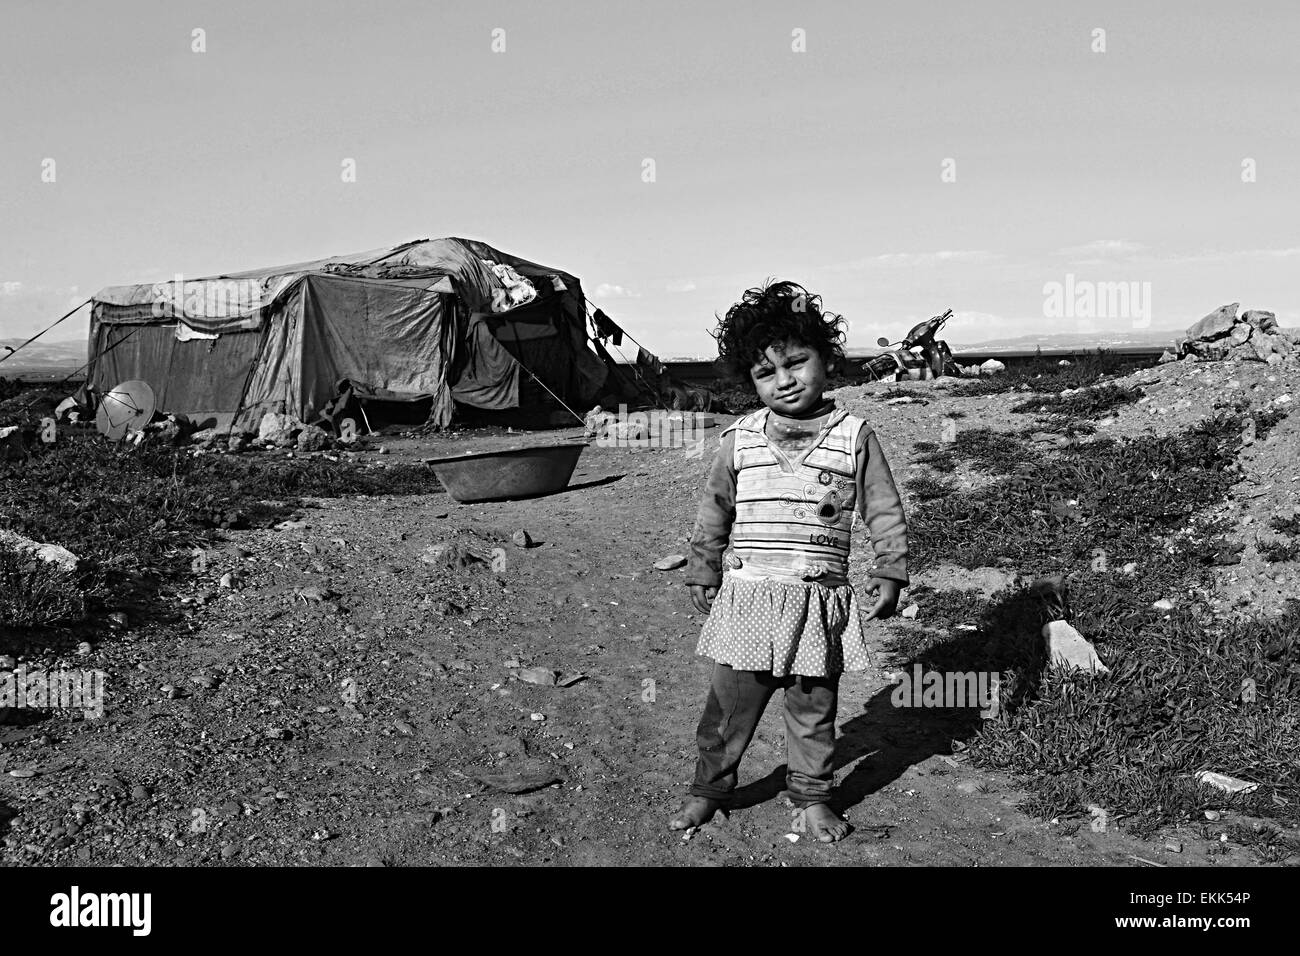 Ritratto di rifugiati che vivono senza tetto in Turchia. 1.4.2015 Reyhanli, Turchia Foto Stock